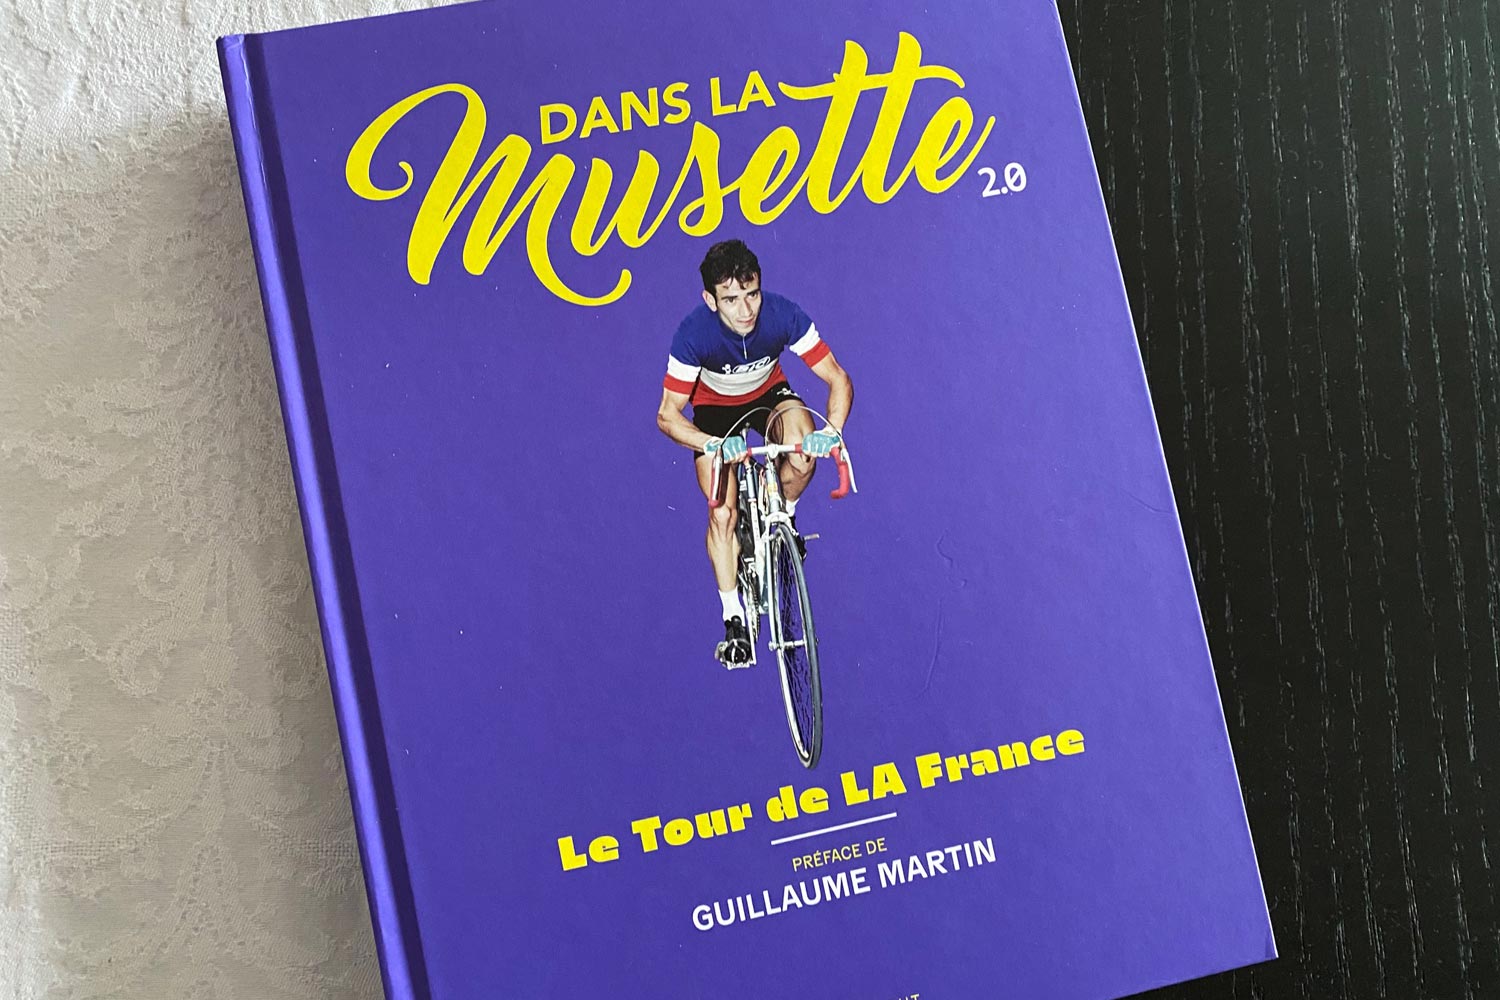 Dans la Musette 2.0, le Tour de LA France - Bike Café